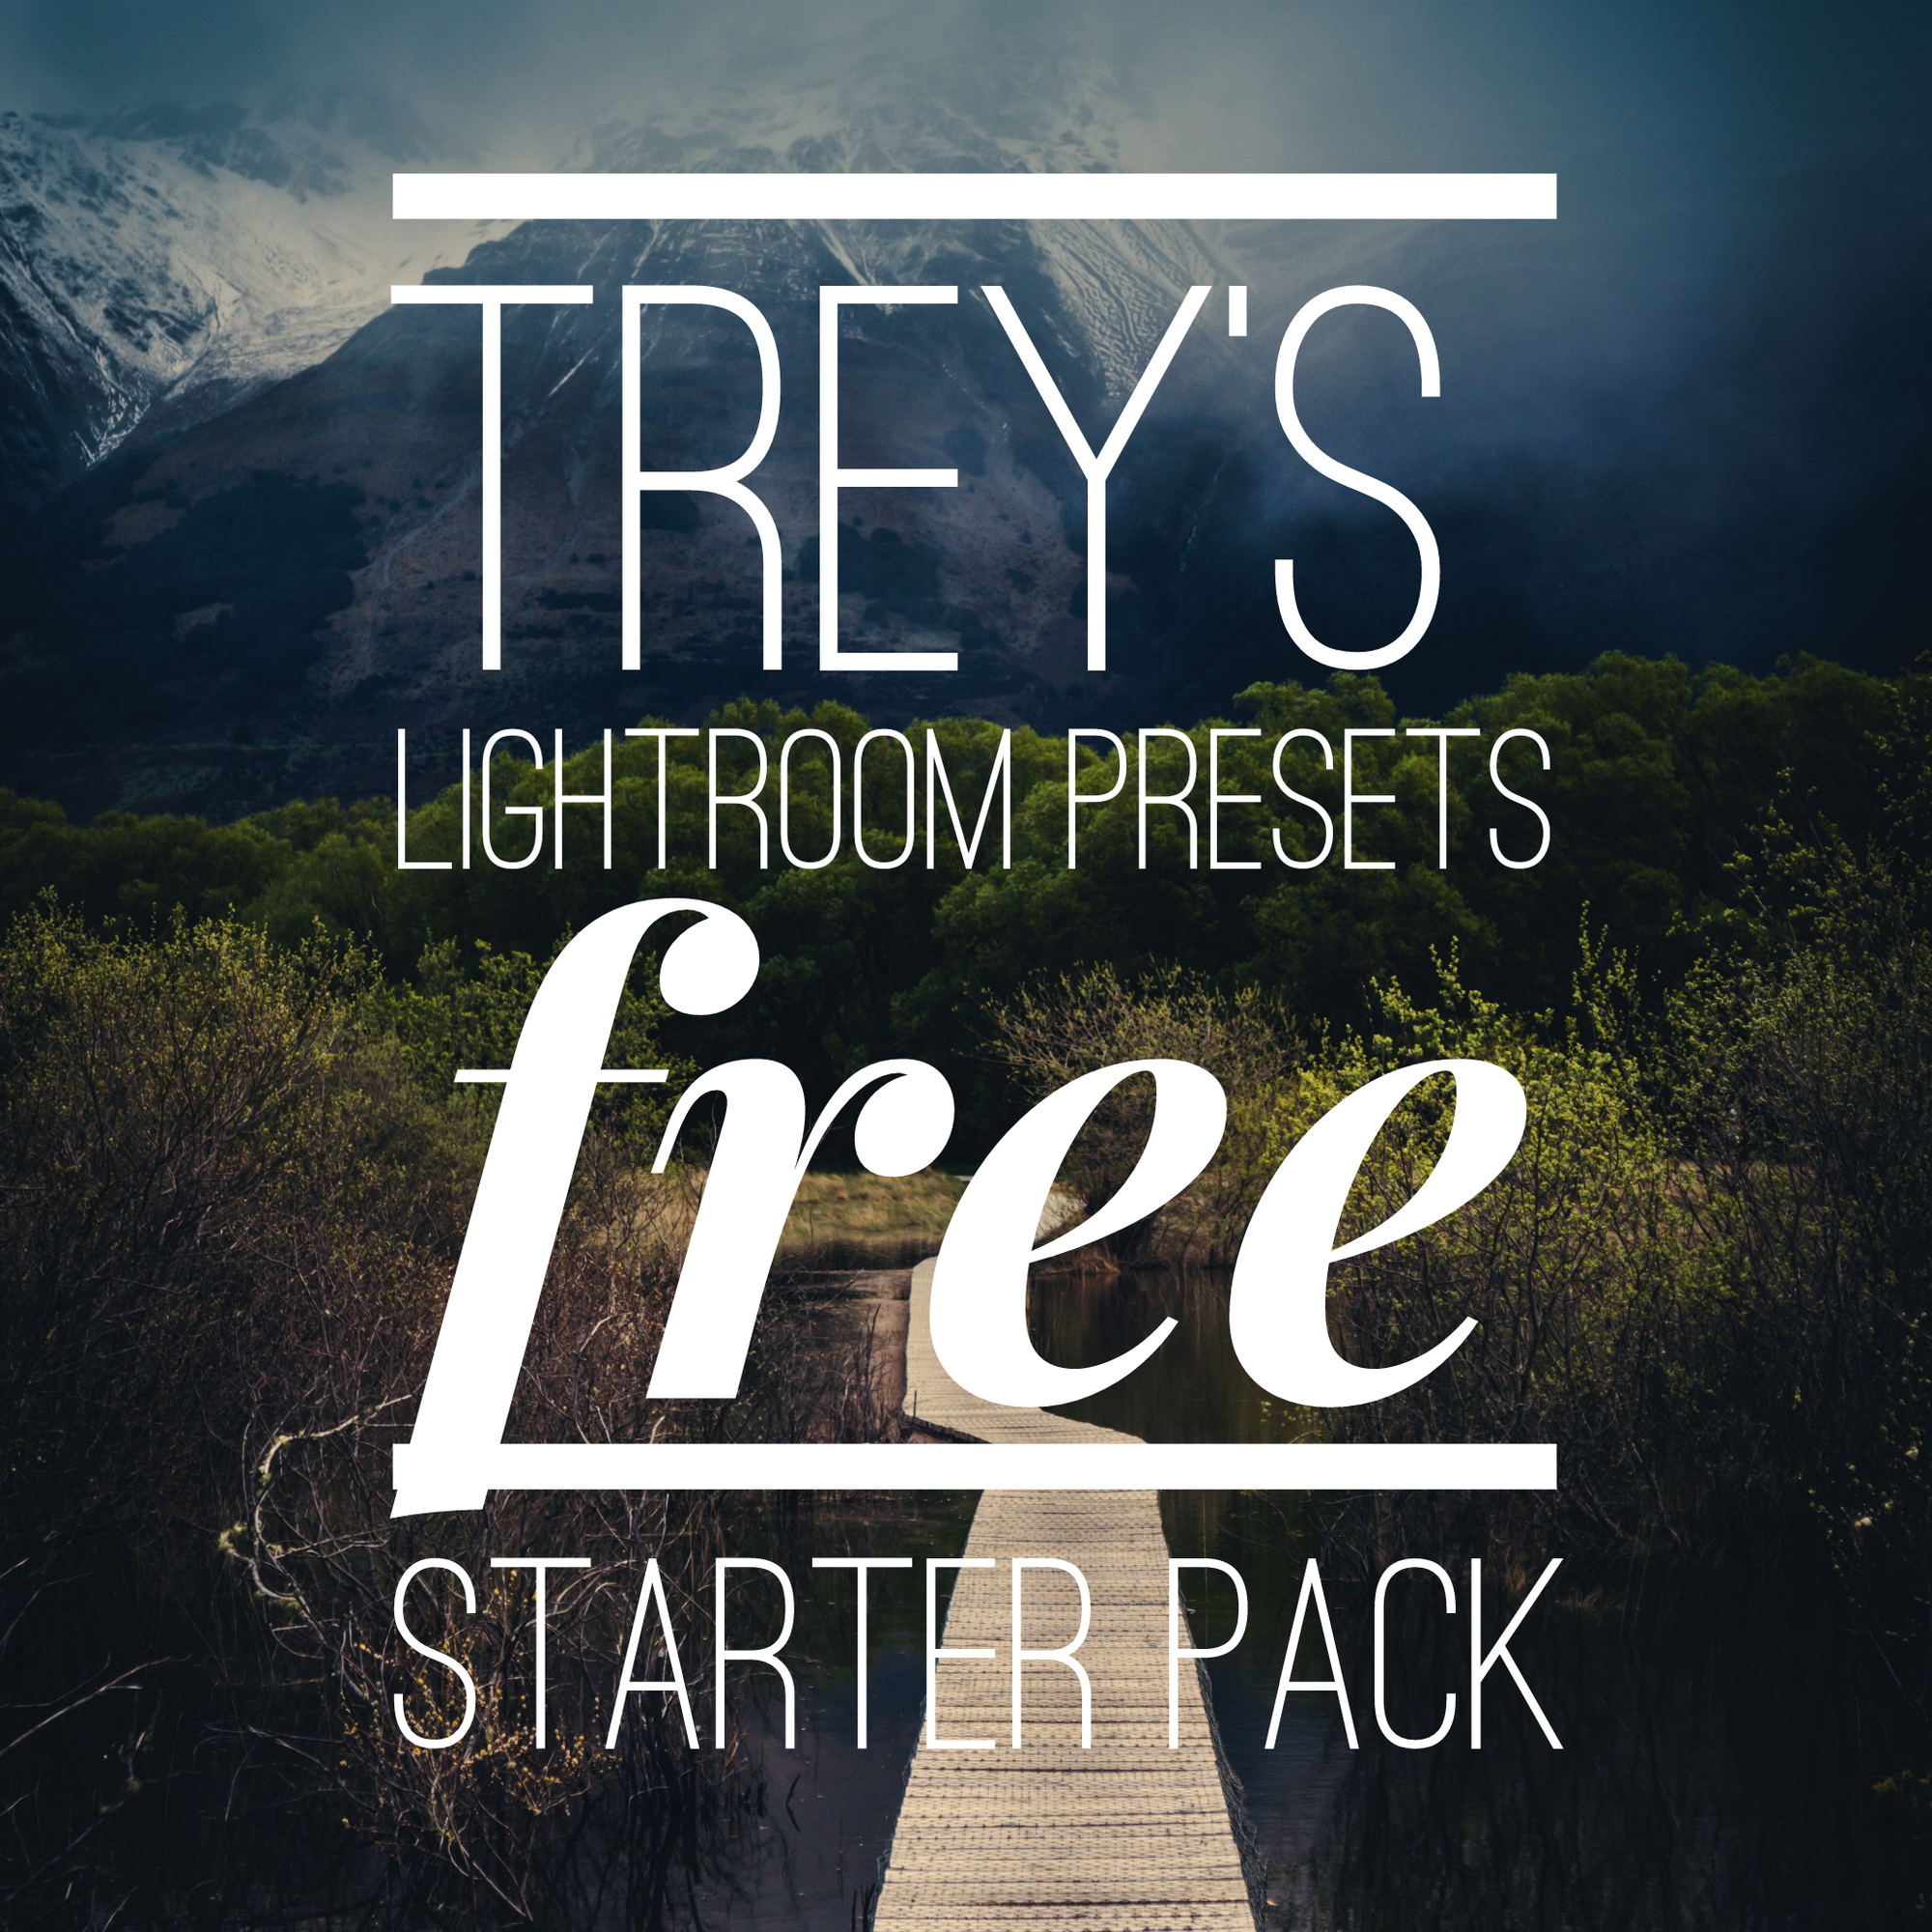 Trey’s Lightroom Presets - FREE Starter pack!